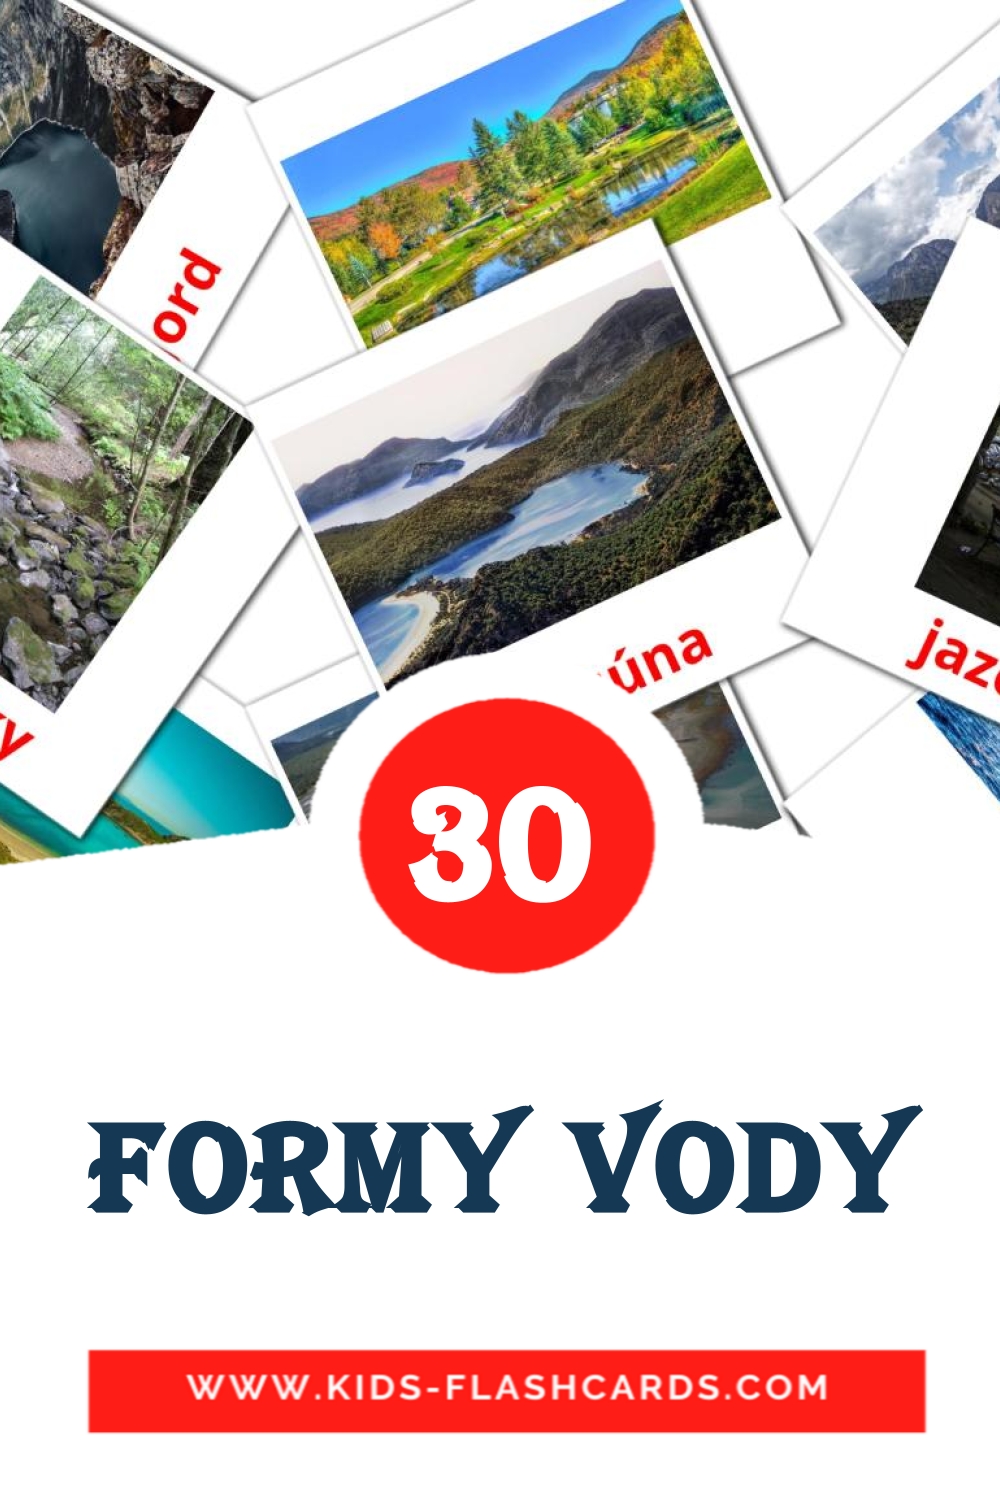 30 Formy vody Bildkarten für den Kindergarten auf Slowakisch